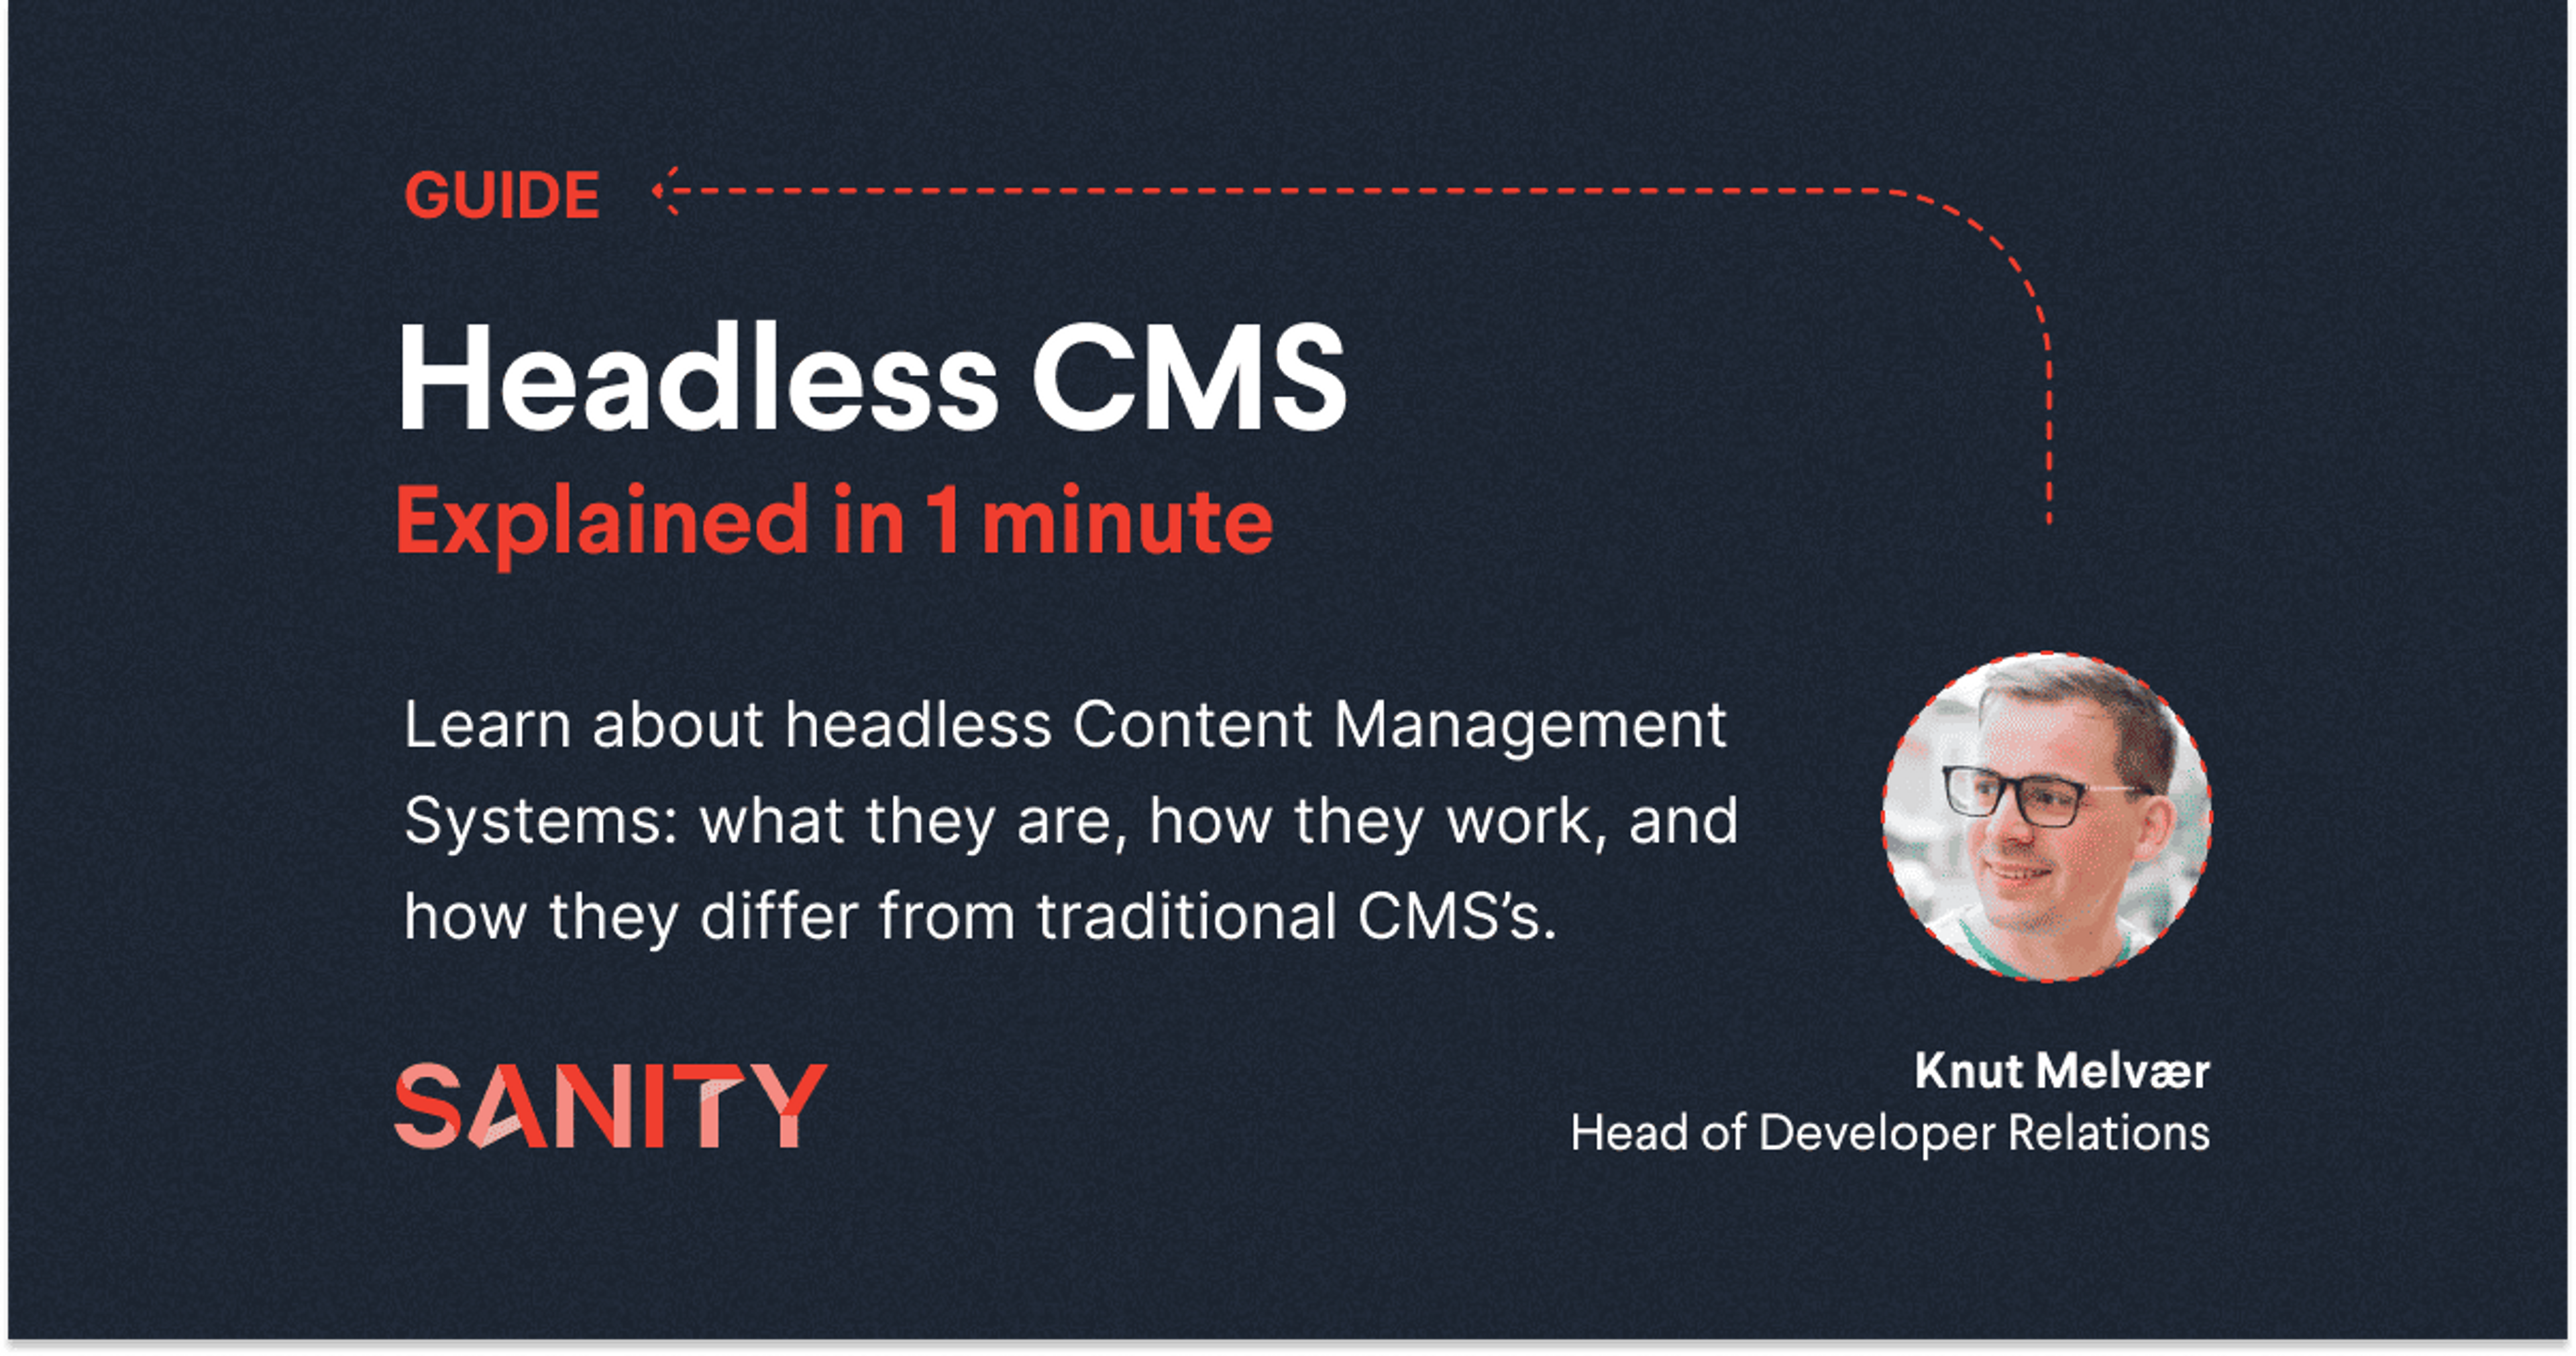 Headless CMS Explained